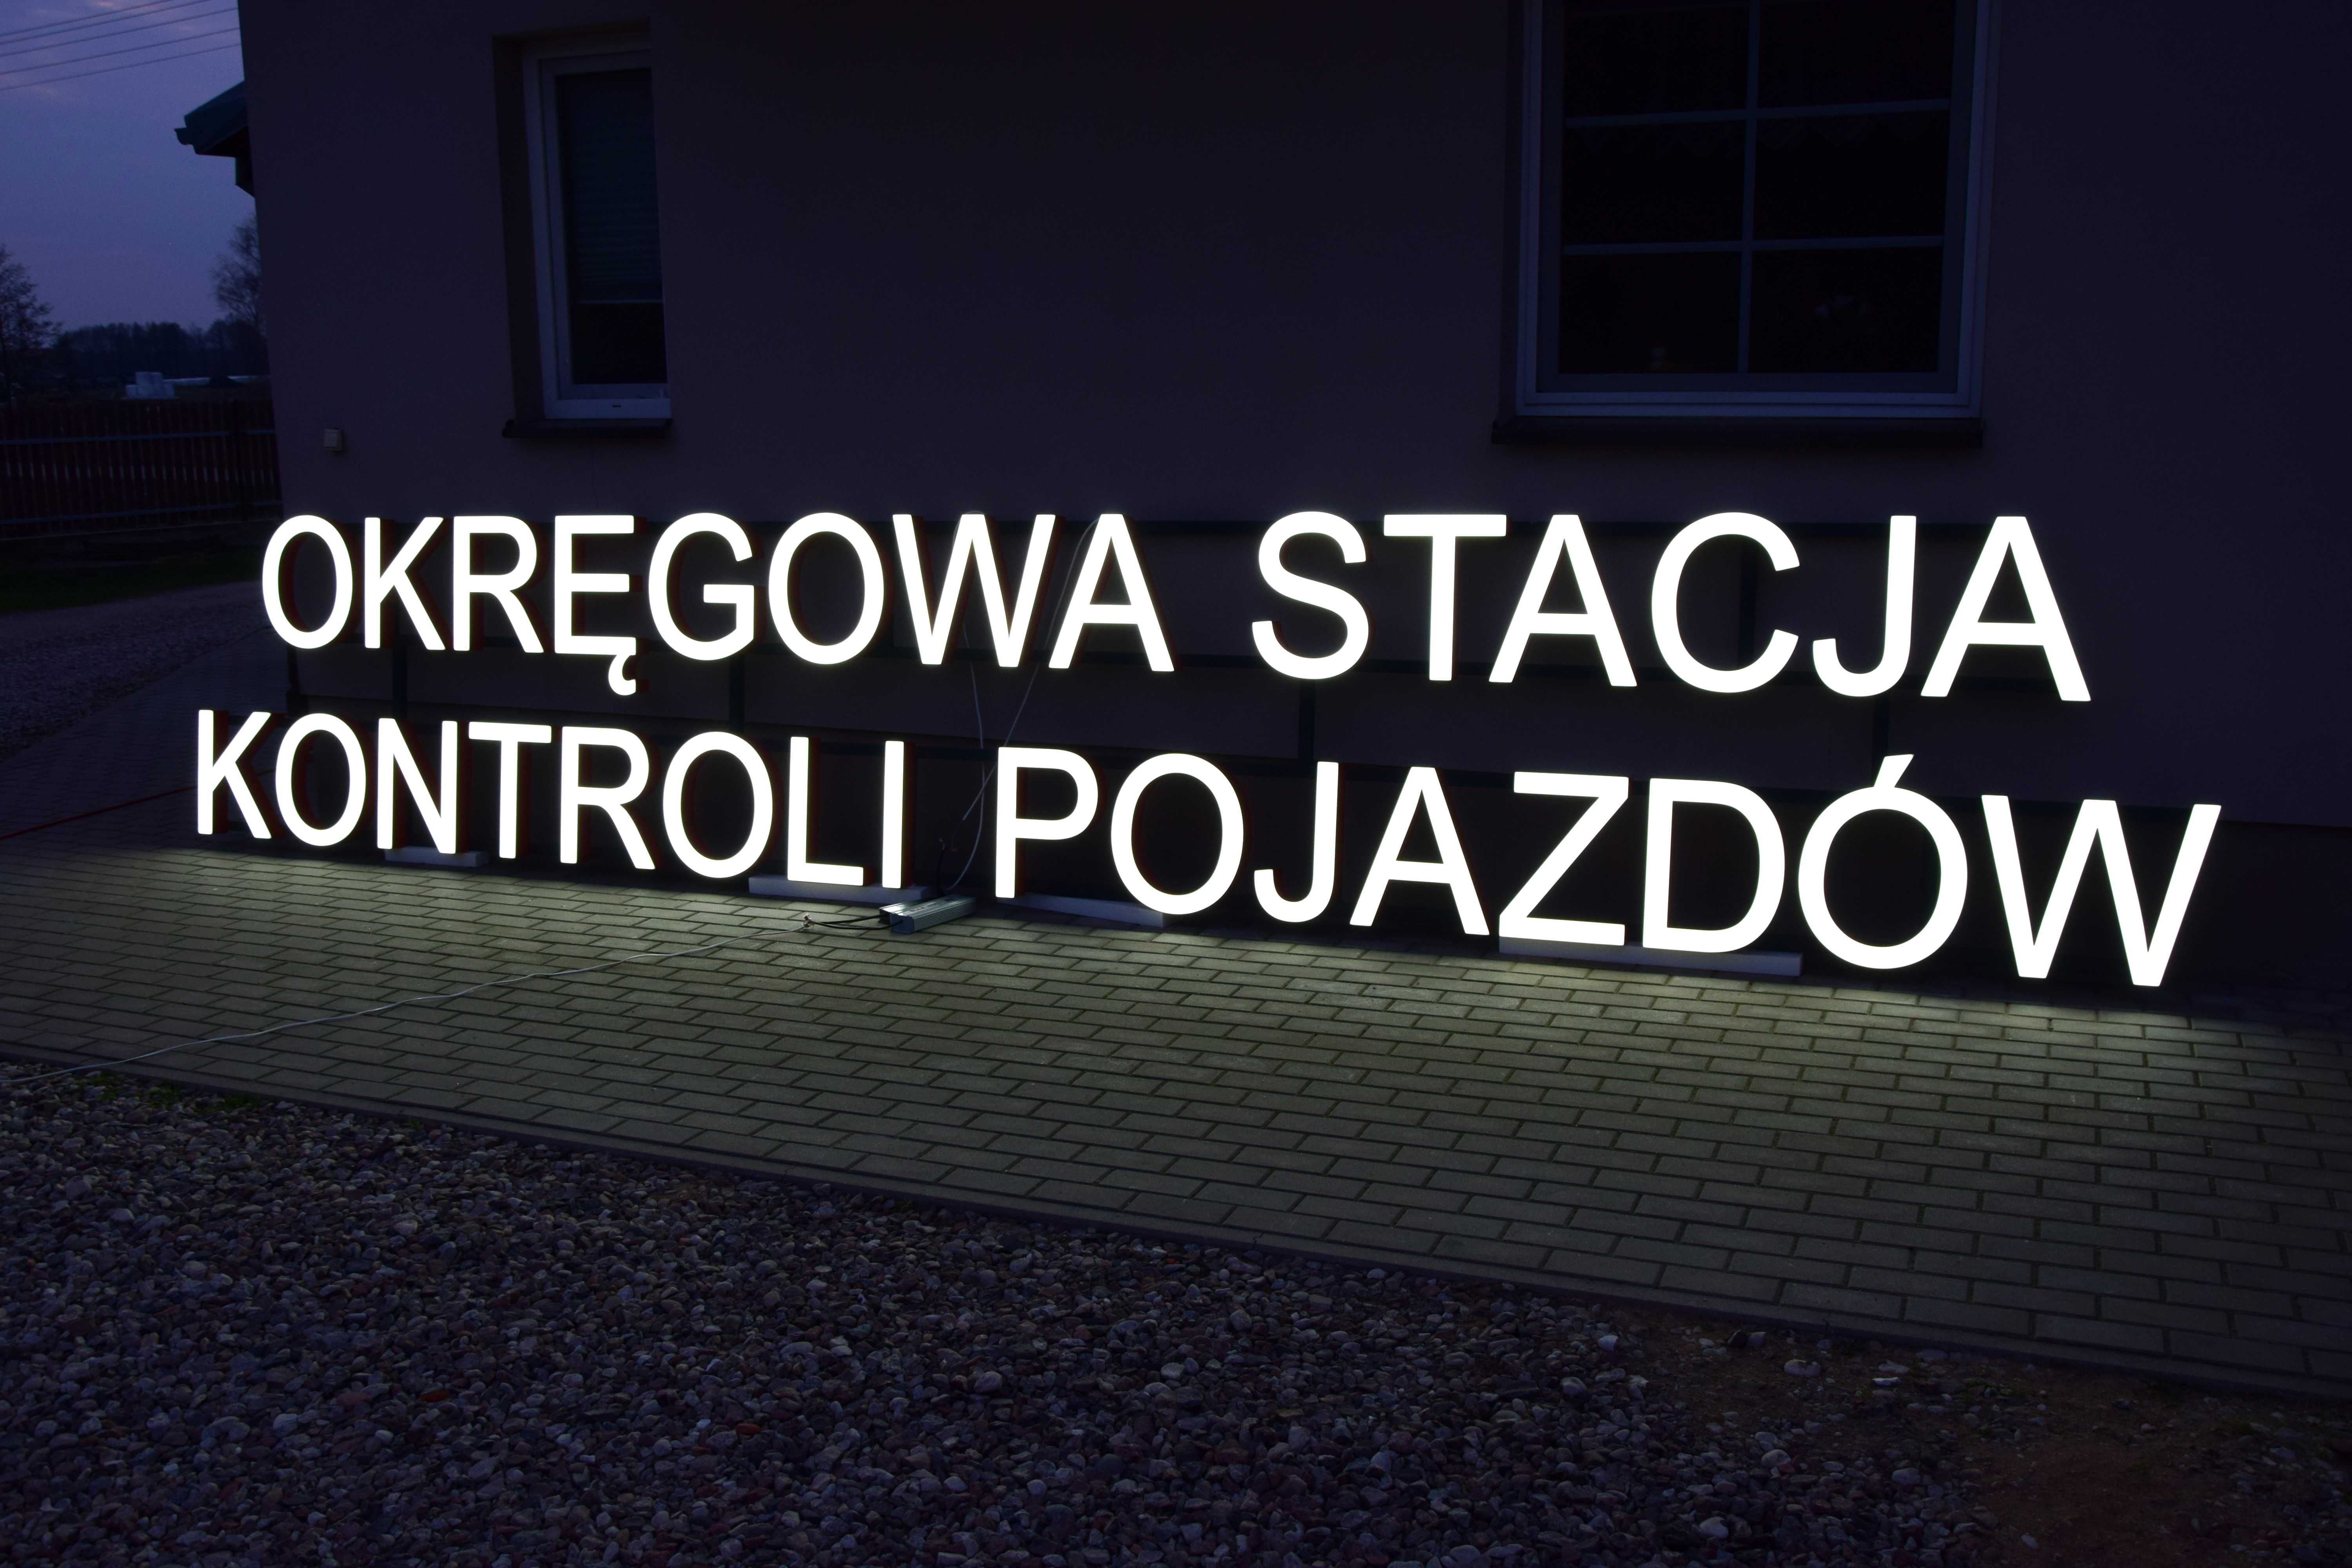 NEON Okręgowa Stacja Kontroli Pojazdów, Reklama LED OSKP, Litery 3D